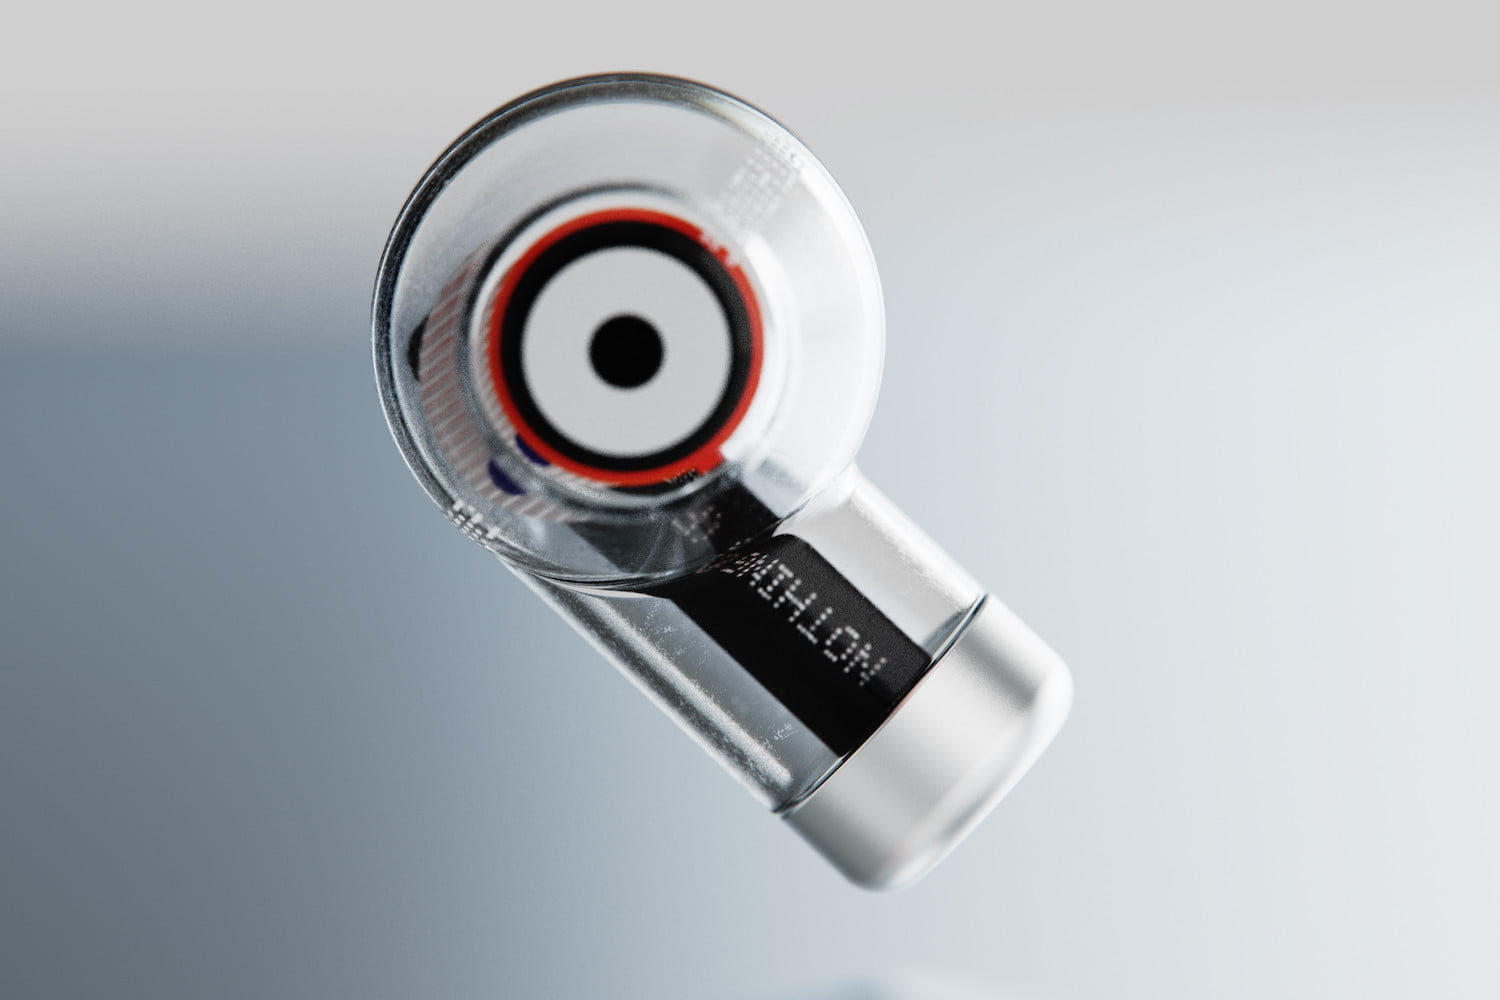 Nothing от создателя OnePlus показала прозрачные беспроводные наушники Ear (1) с шумоподавлением